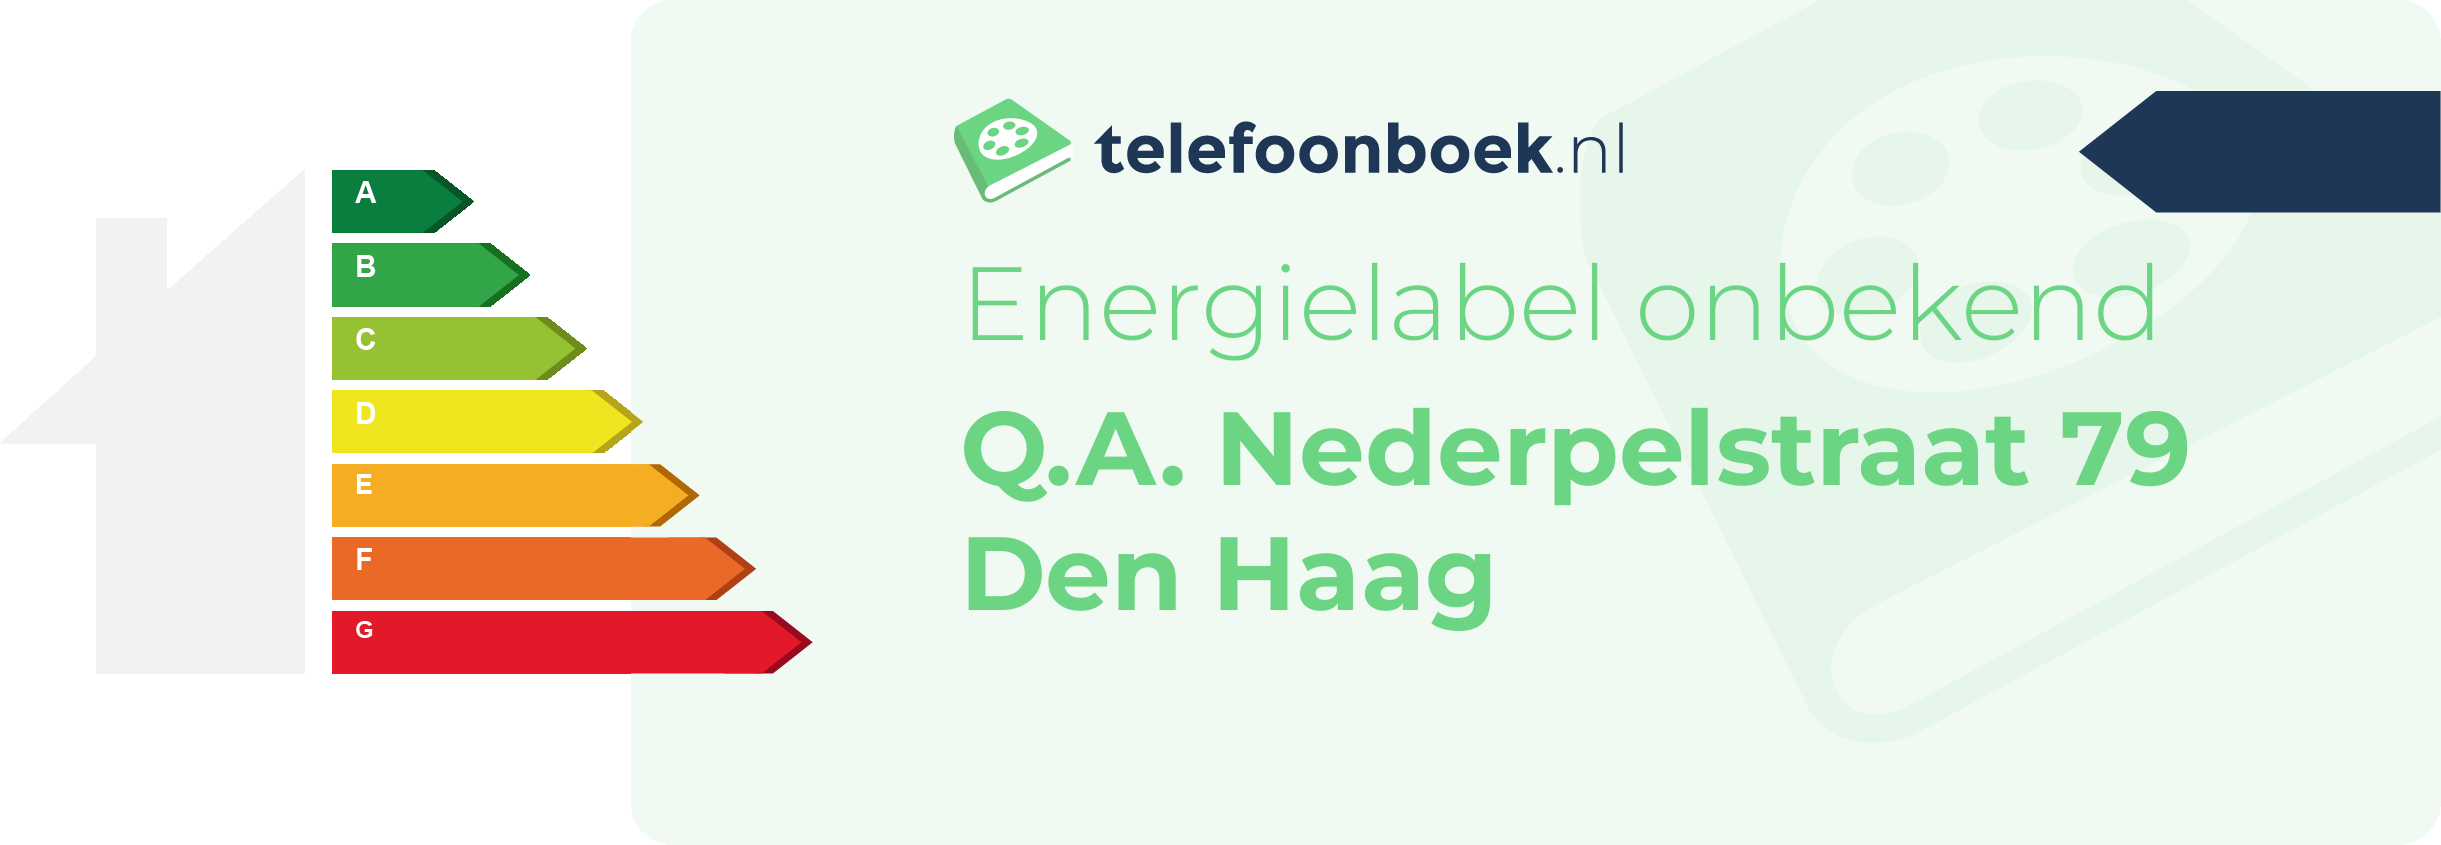 Energielabel Q.A. Nederpelstraat 79 Den Haag